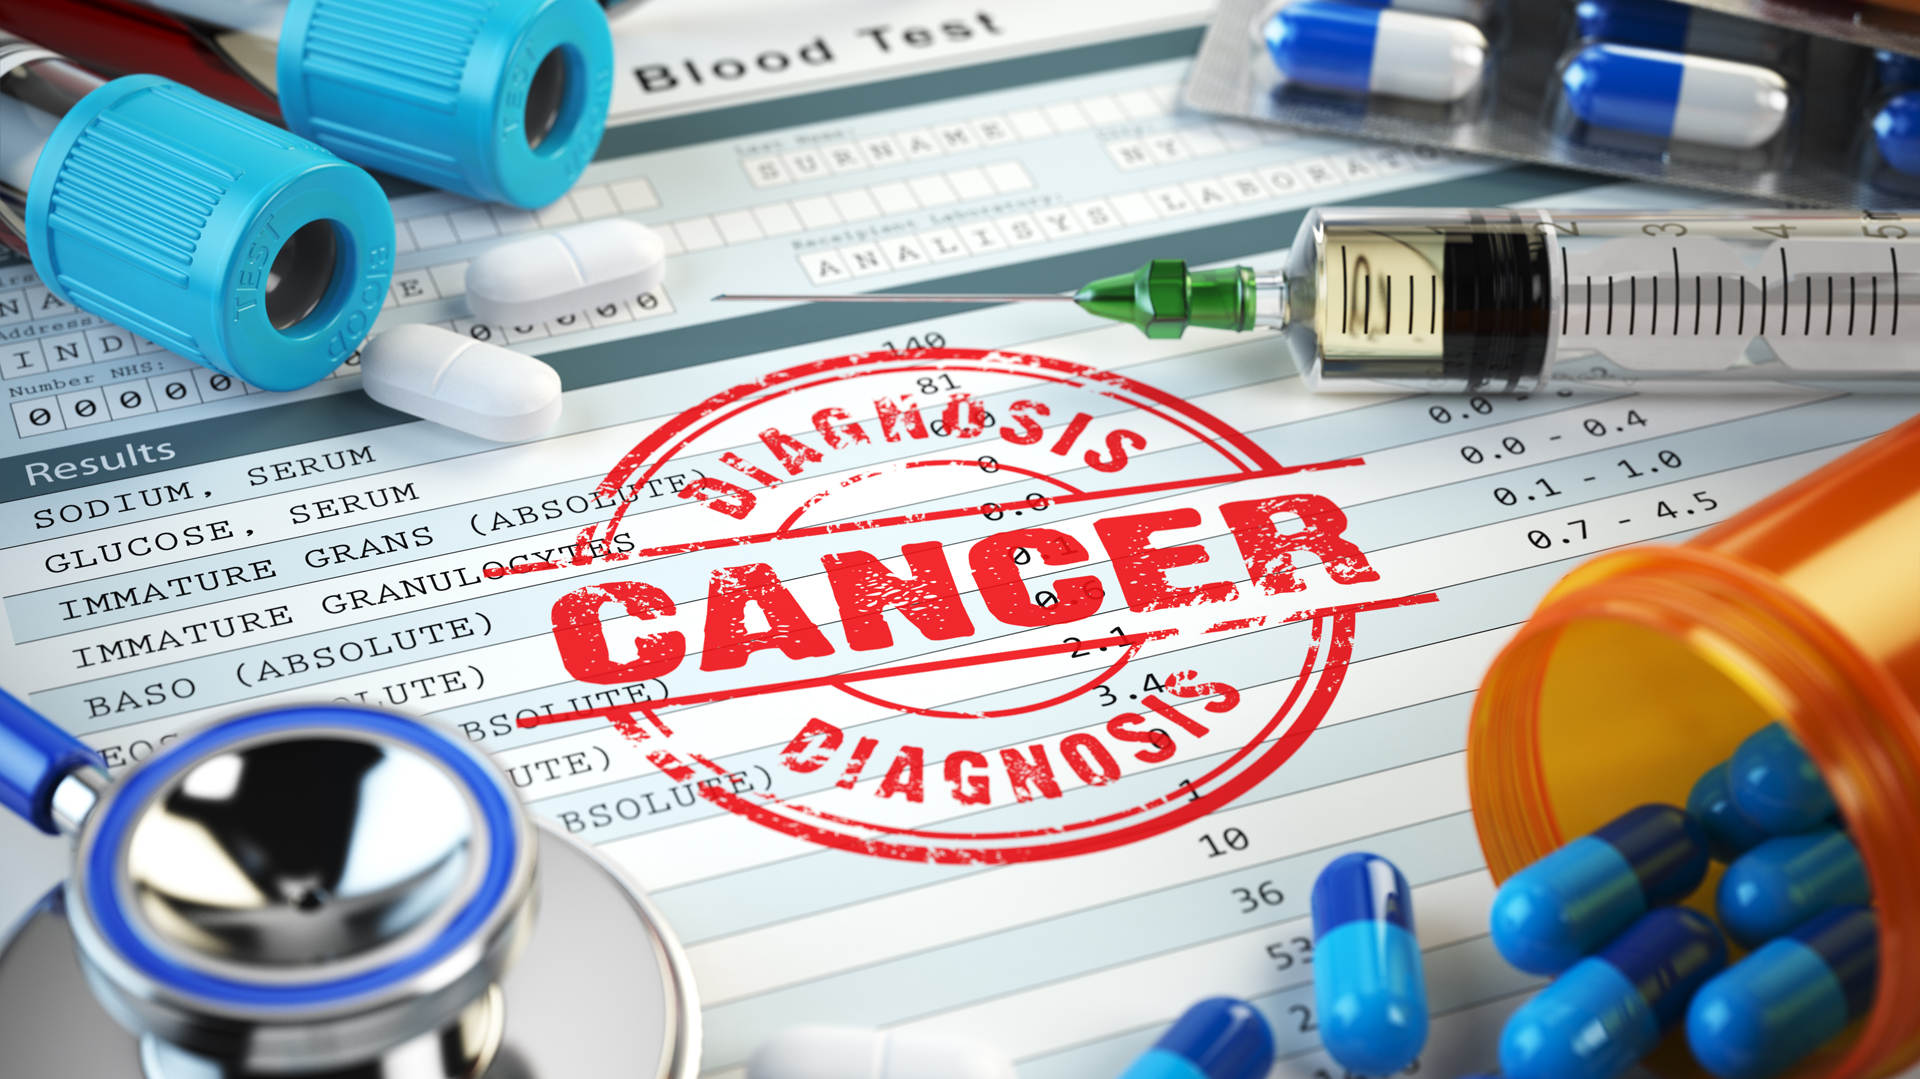 Un análisis de sangre podría detectar hasta 50 tipos de cáncer antes de los síntomas